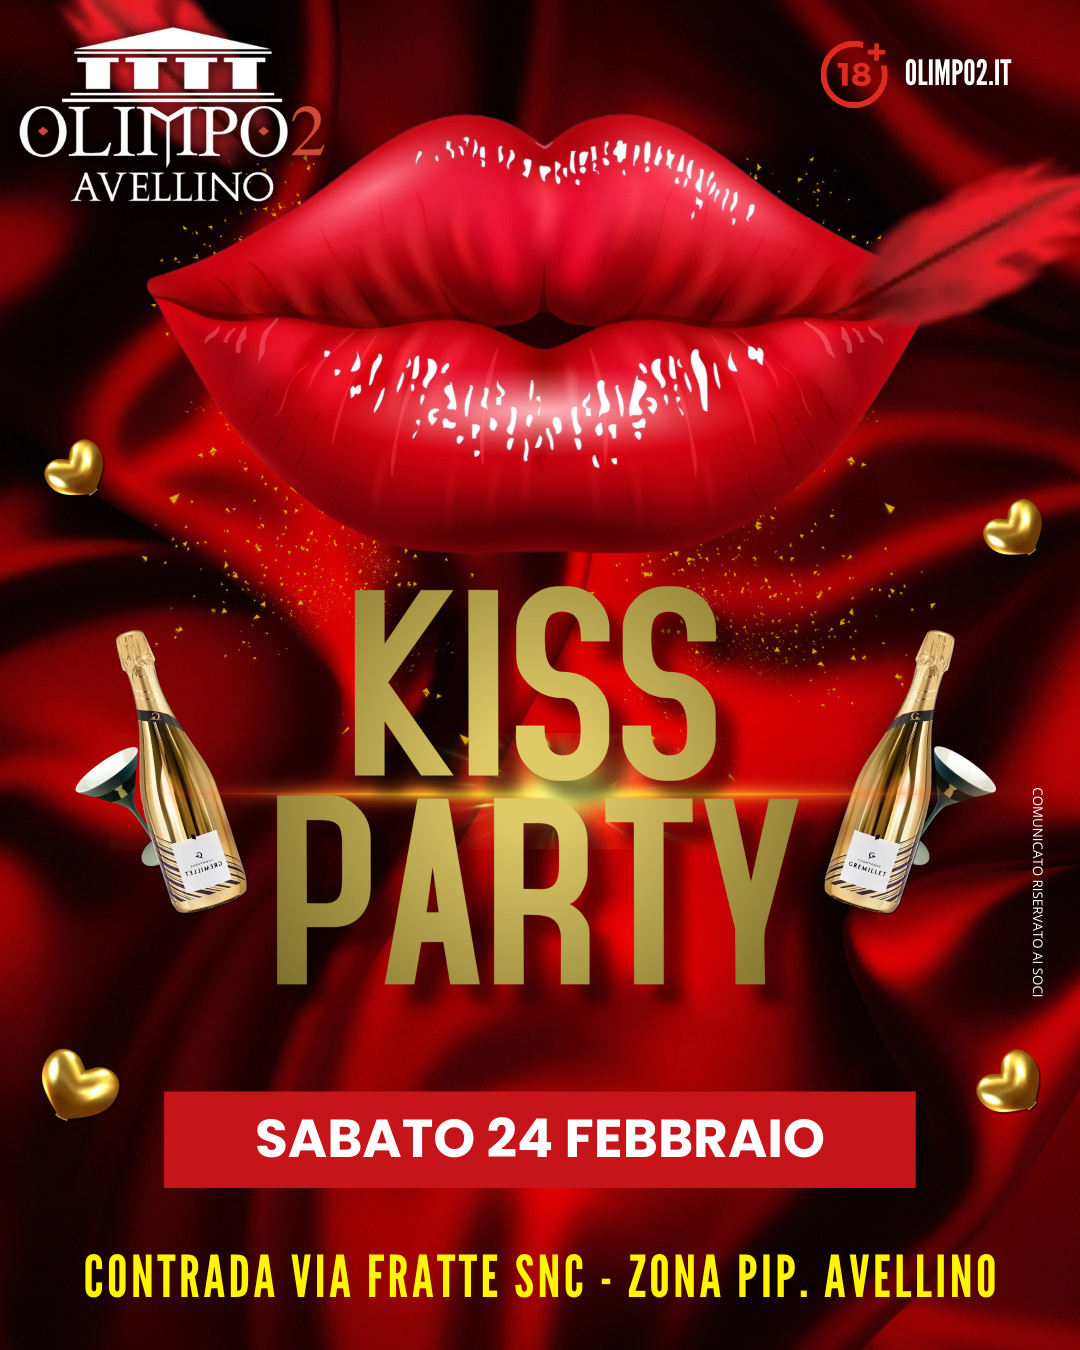 kiss party olimpo 2 avellino